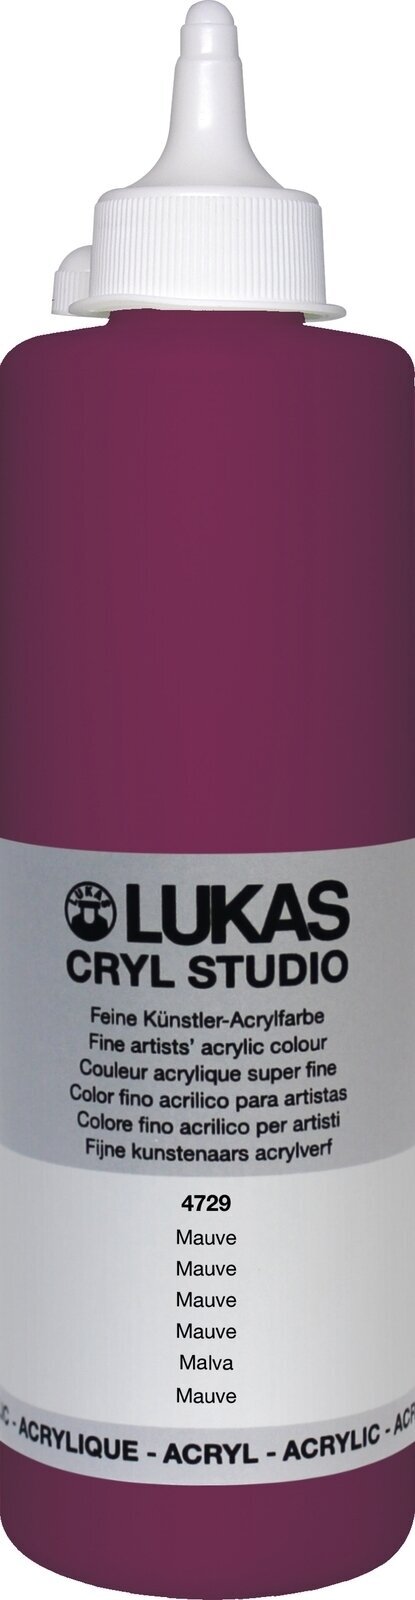 Pintura acrílica Lukas Cryl Studio Acrylic Paint 500 ml Mauve Pintura acrílica